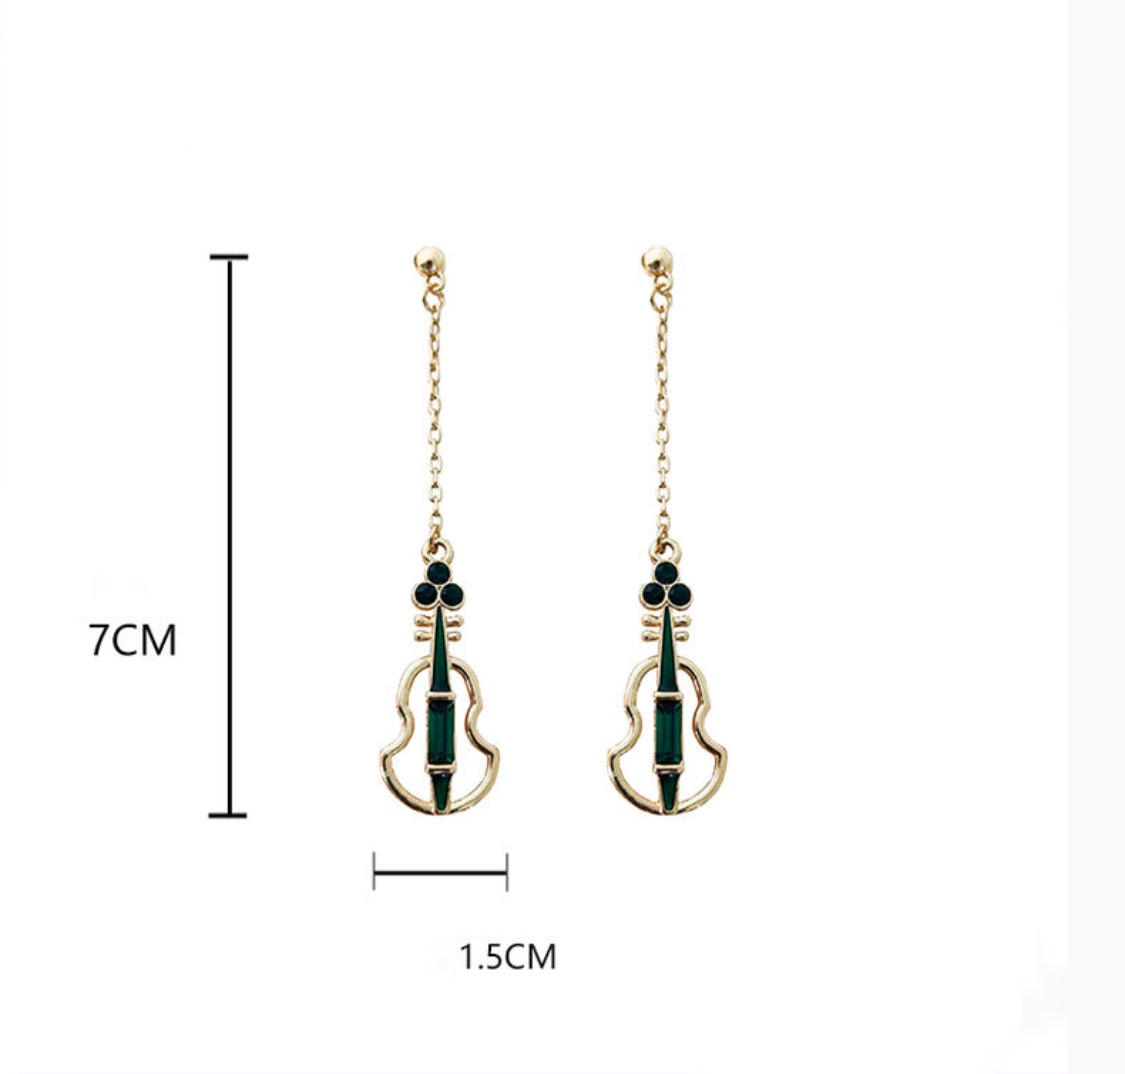 Instrument earrings